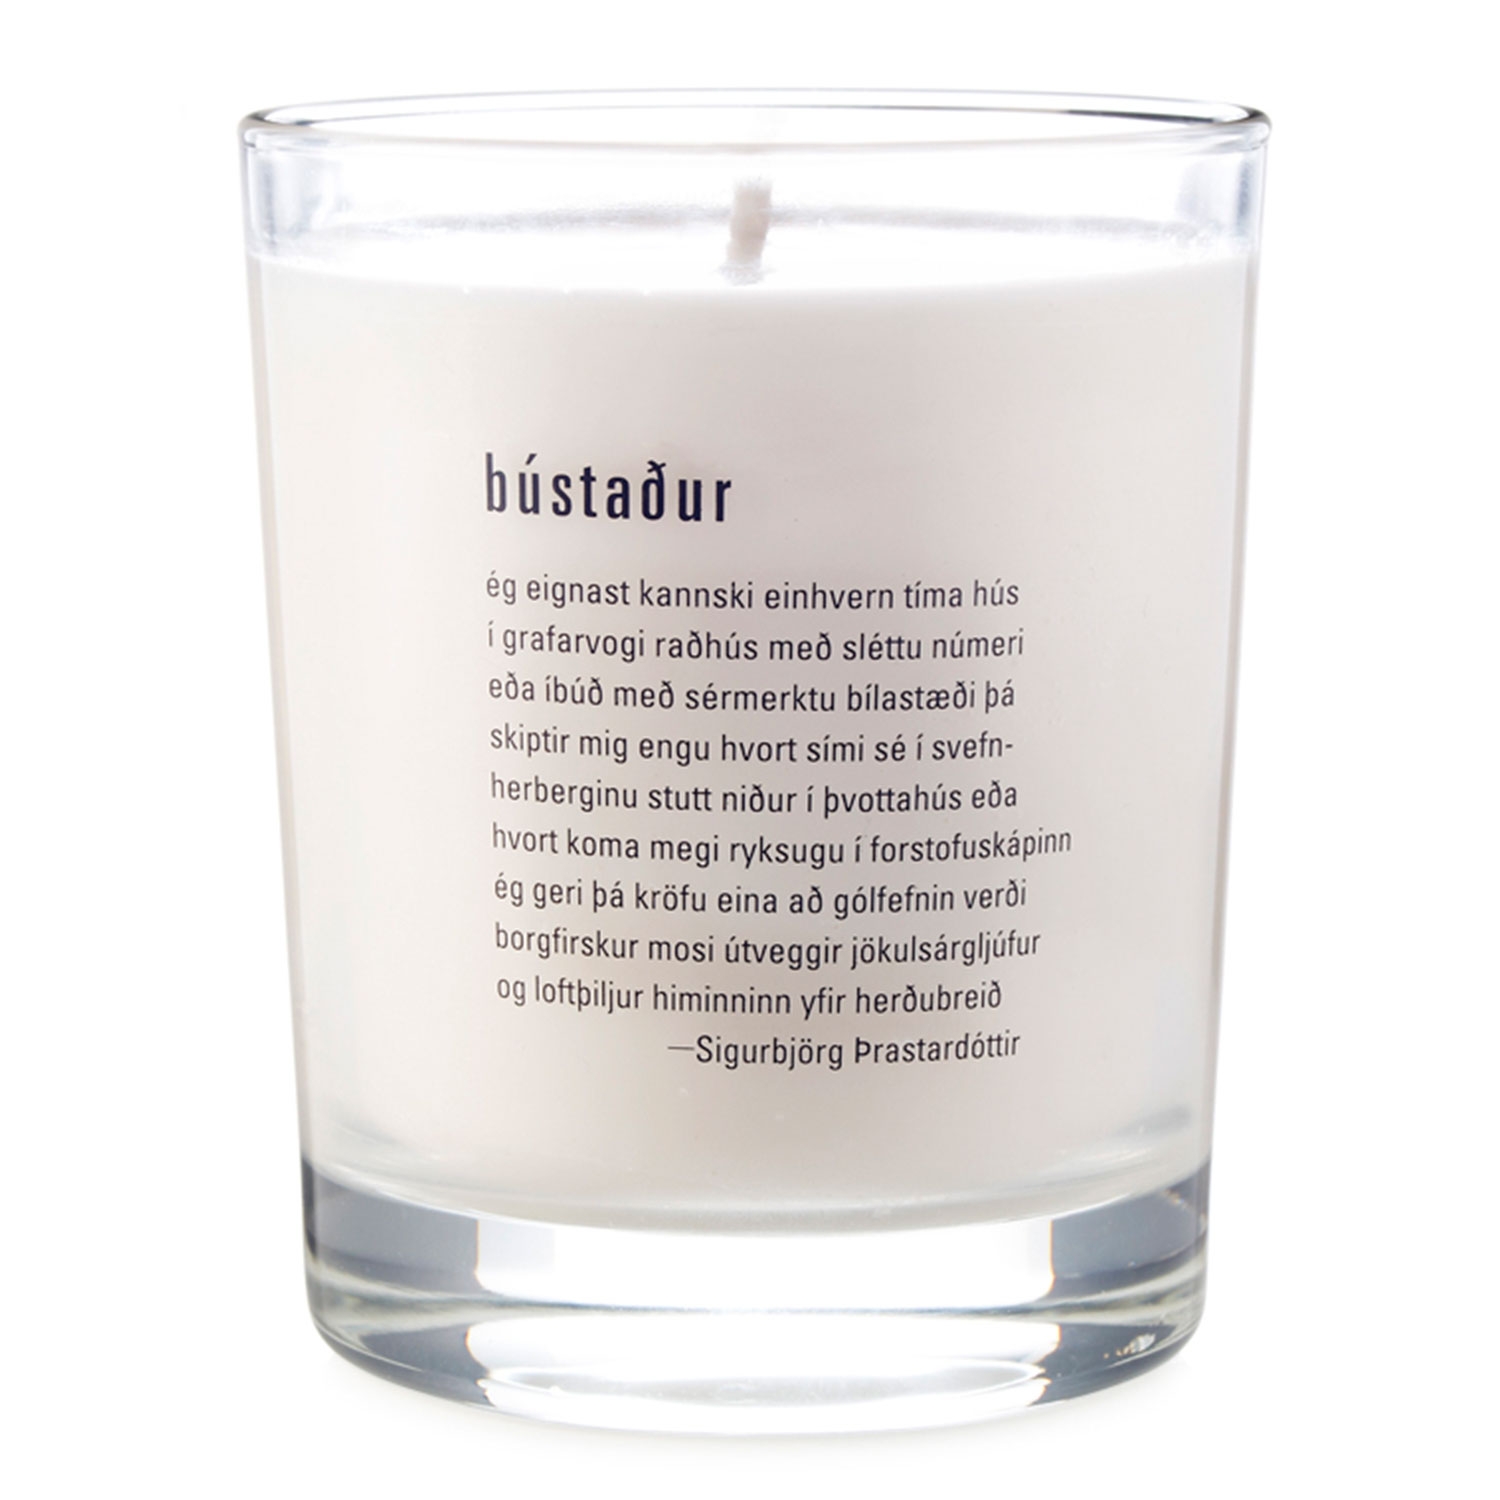 Produktbild von Sóley Scent - Bústaður Luxury candle